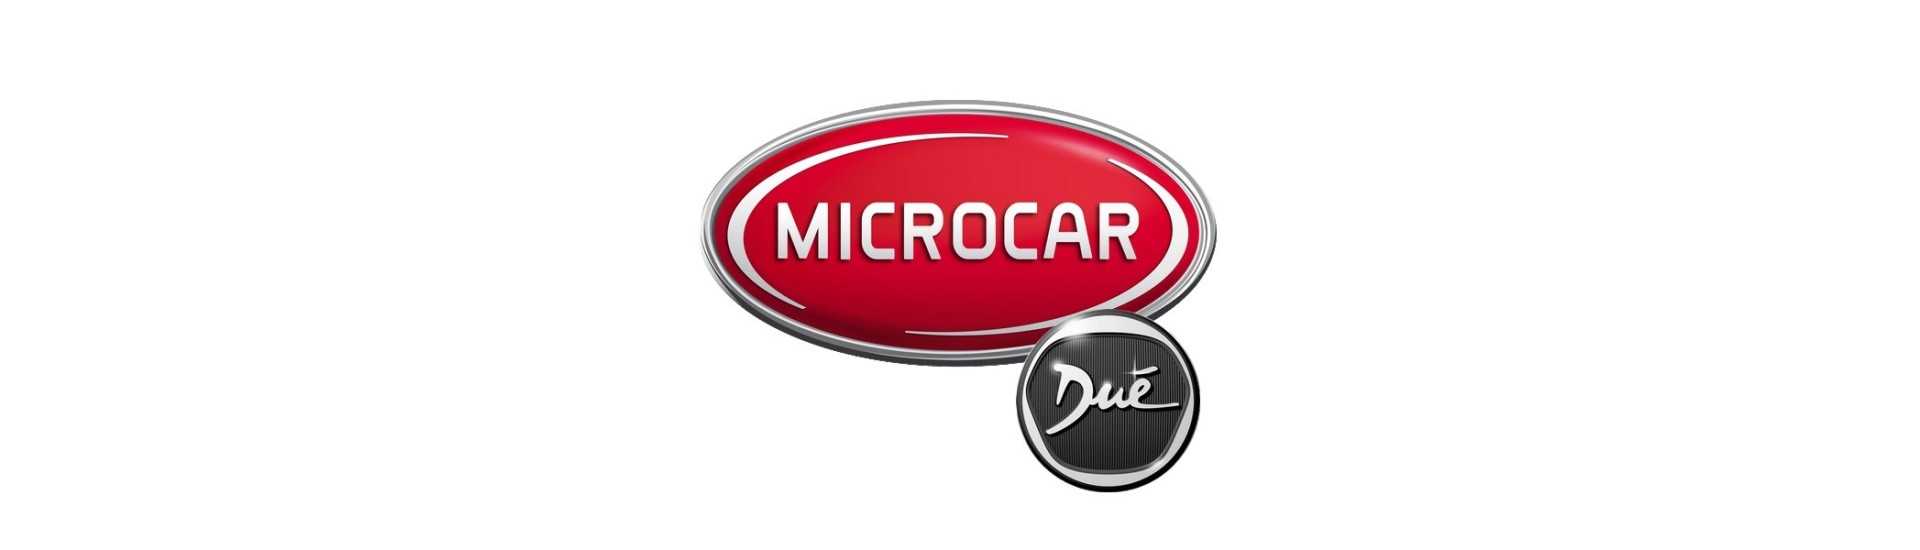 Phare au meilleur prix pour voiture sans permis Microcar Dué